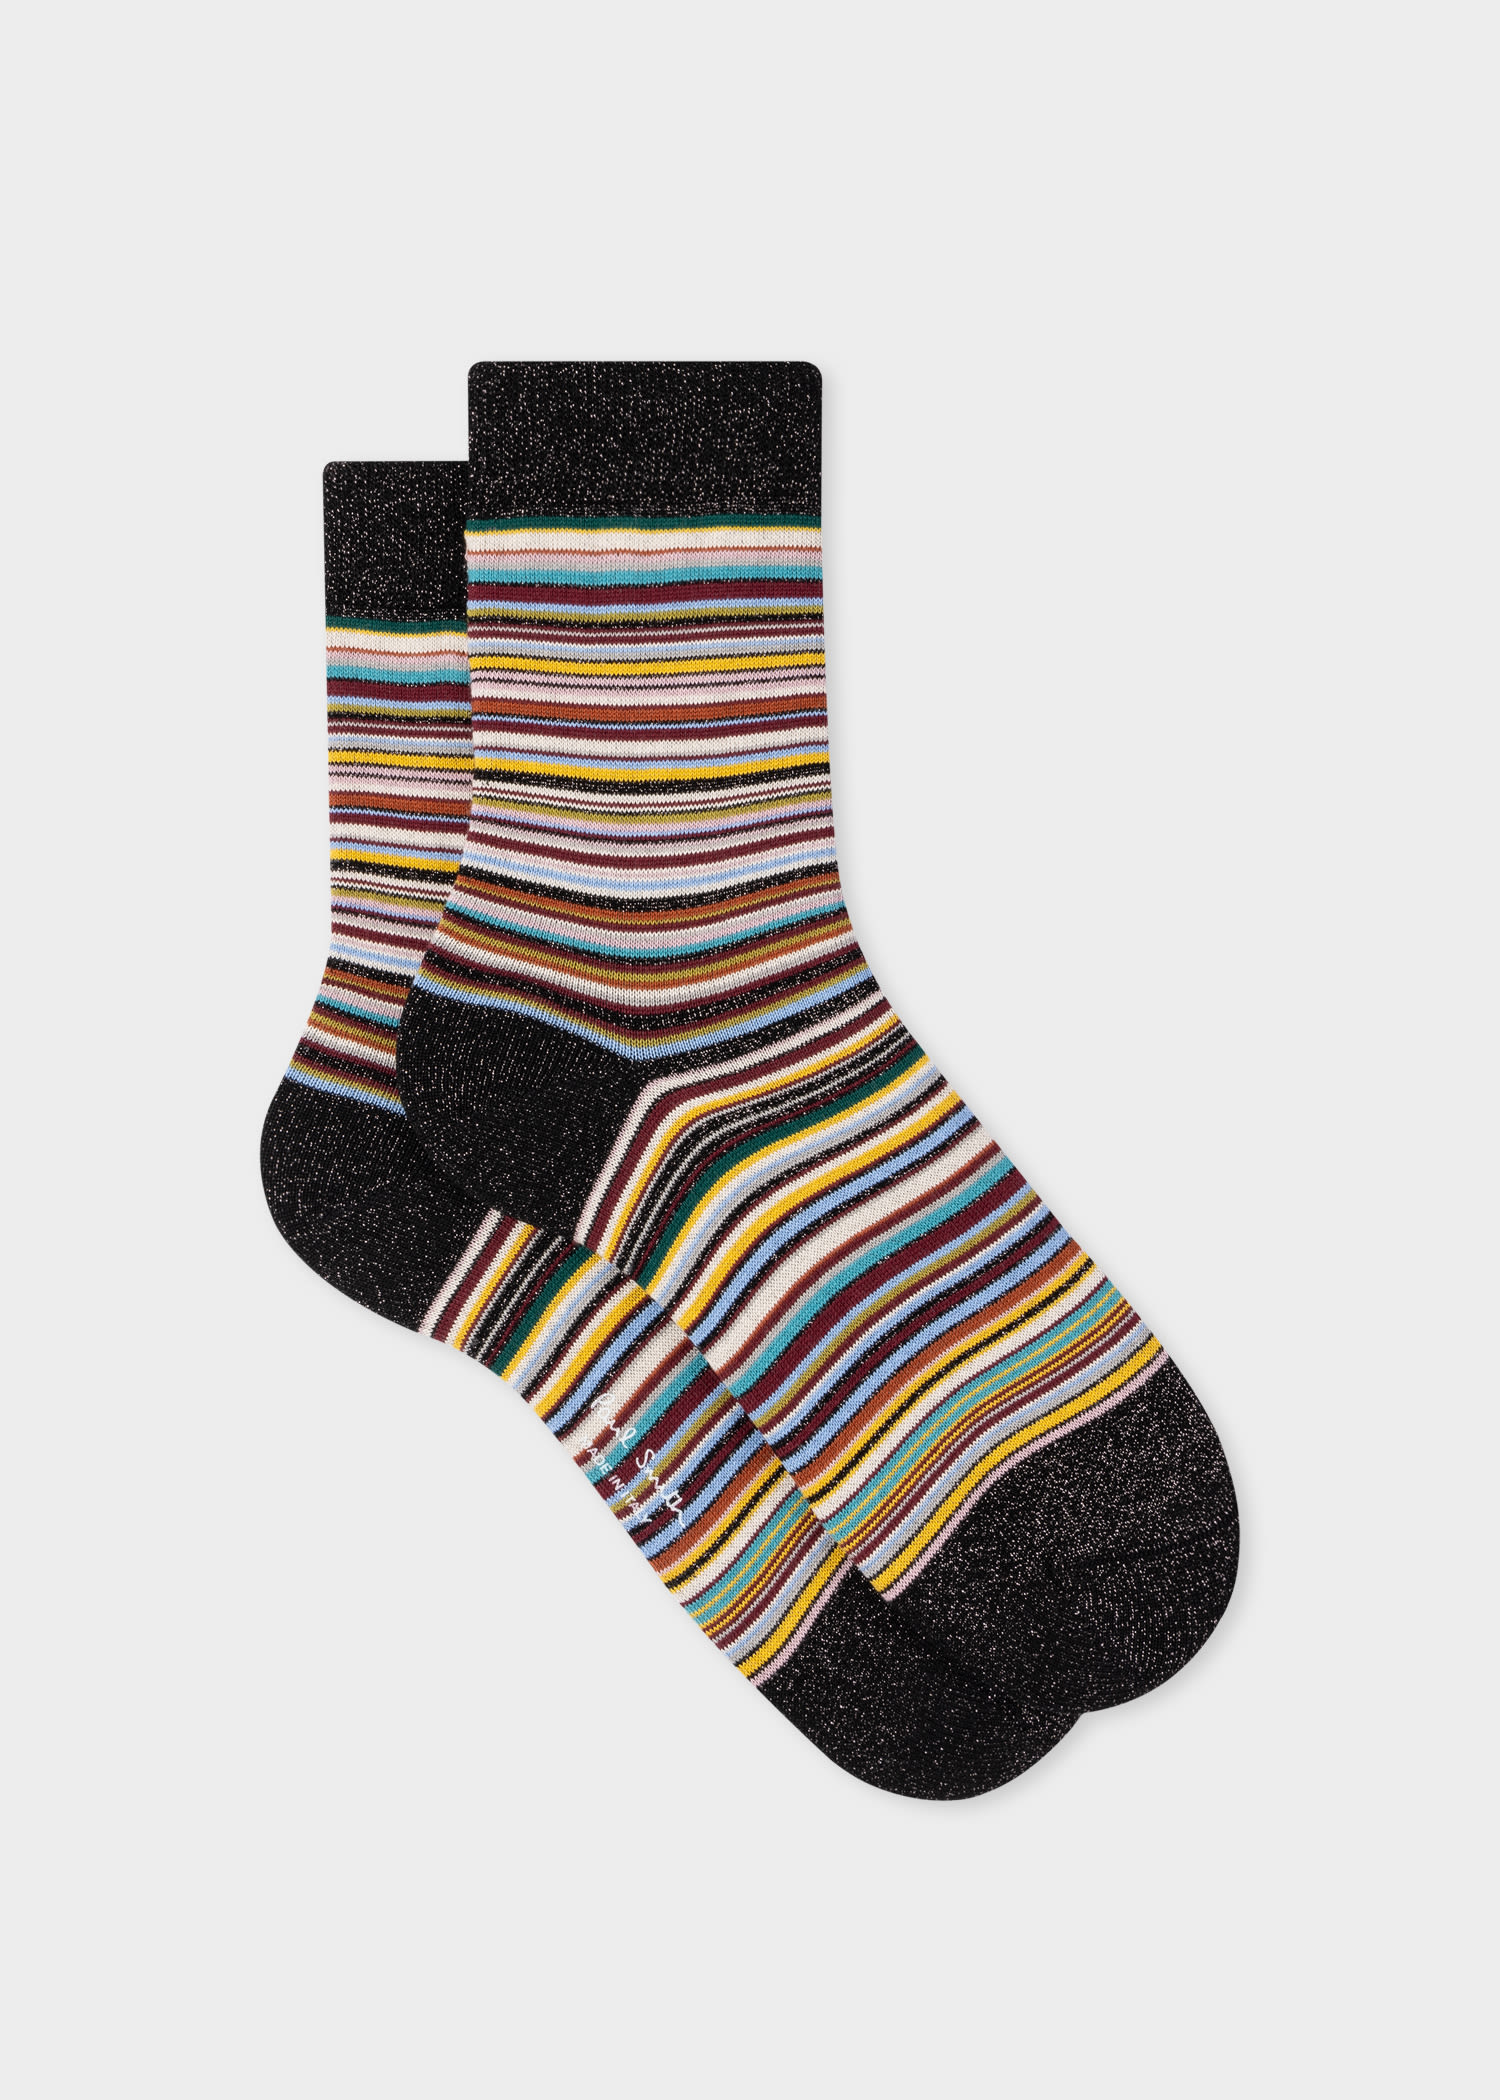 Paul Smith Women's Glitter 'signature Stripe' Socks Multicolour